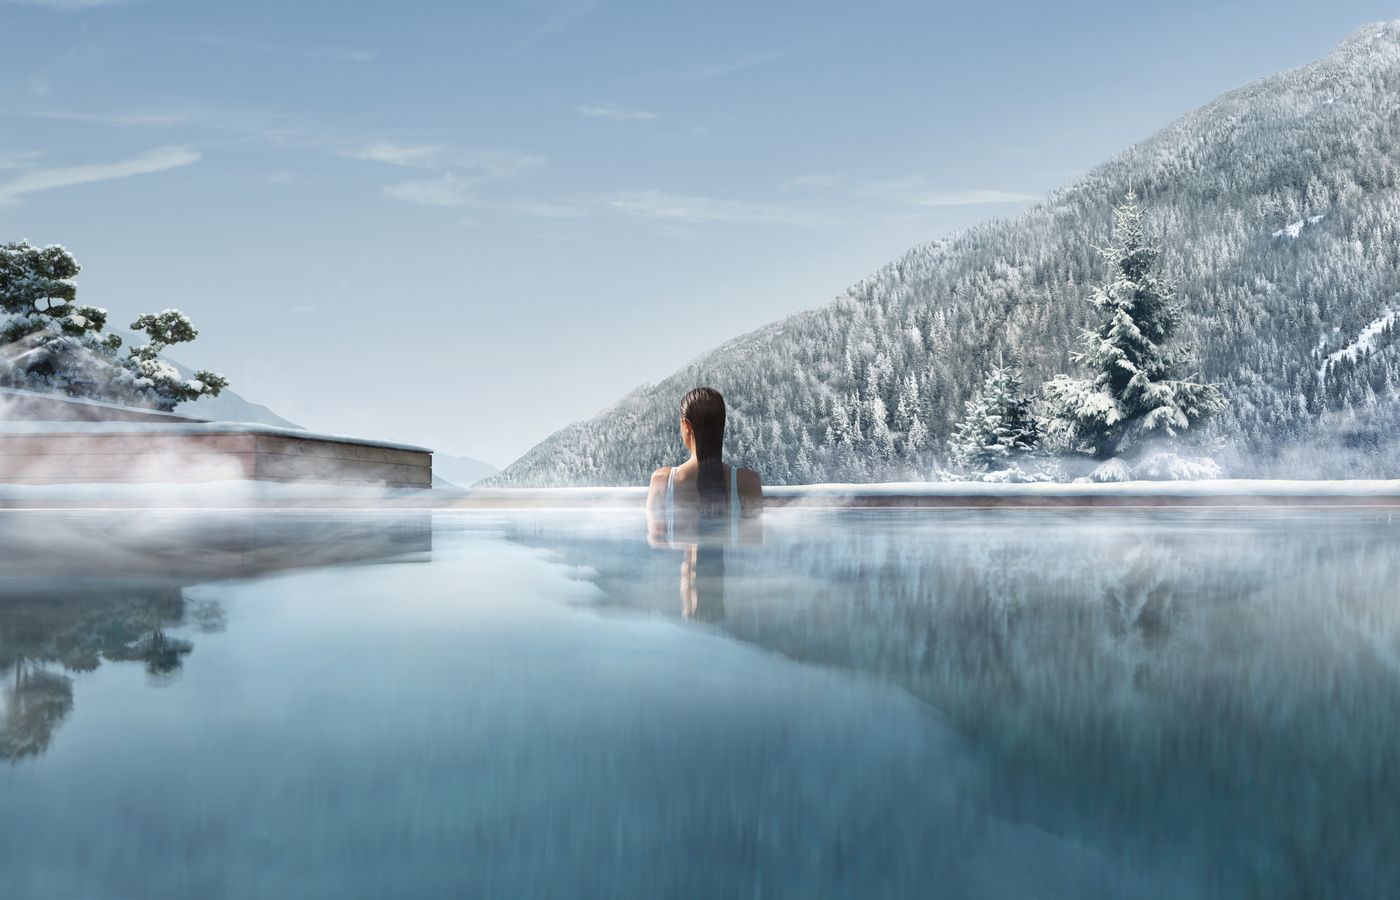 Trip Barcelona - FitReisen - Lefay Resort & Spa Dolomiti in Pinzolo buche jetzt Deinen Wellness & Beauty Urlaub im Lefay Resort & Spa Dolomiti in der Region Südtirol, in Italien günstig bei uns!